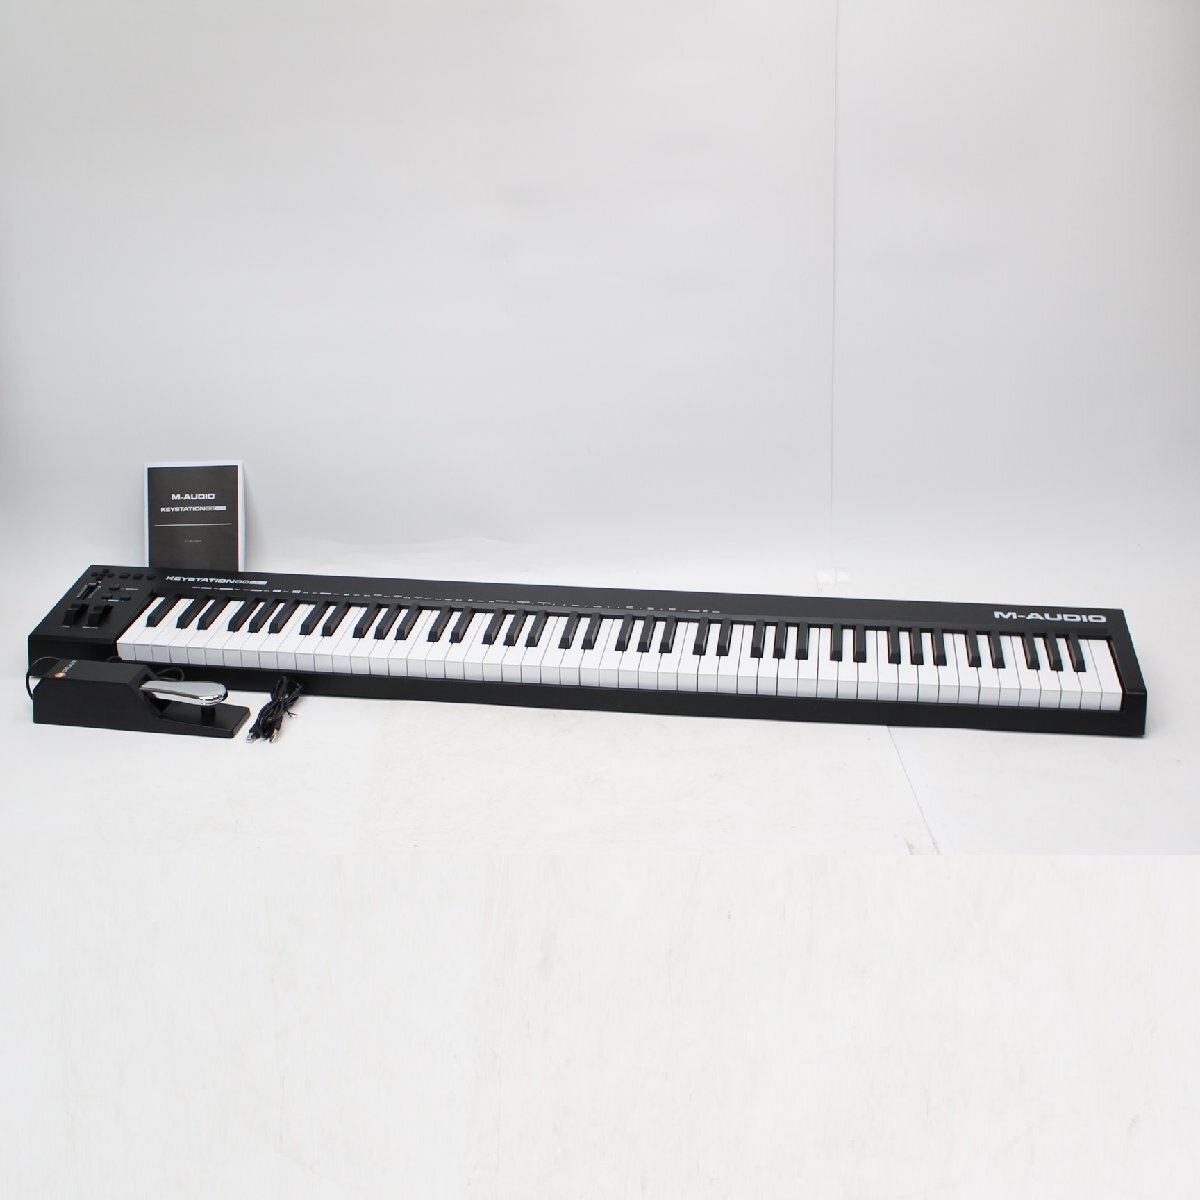 426)【美品】M-AUDIO KEYSTATION88 MK3 キーボード MIDI セミウェイト 88鍵 USB 鍵盤楽器の画像1